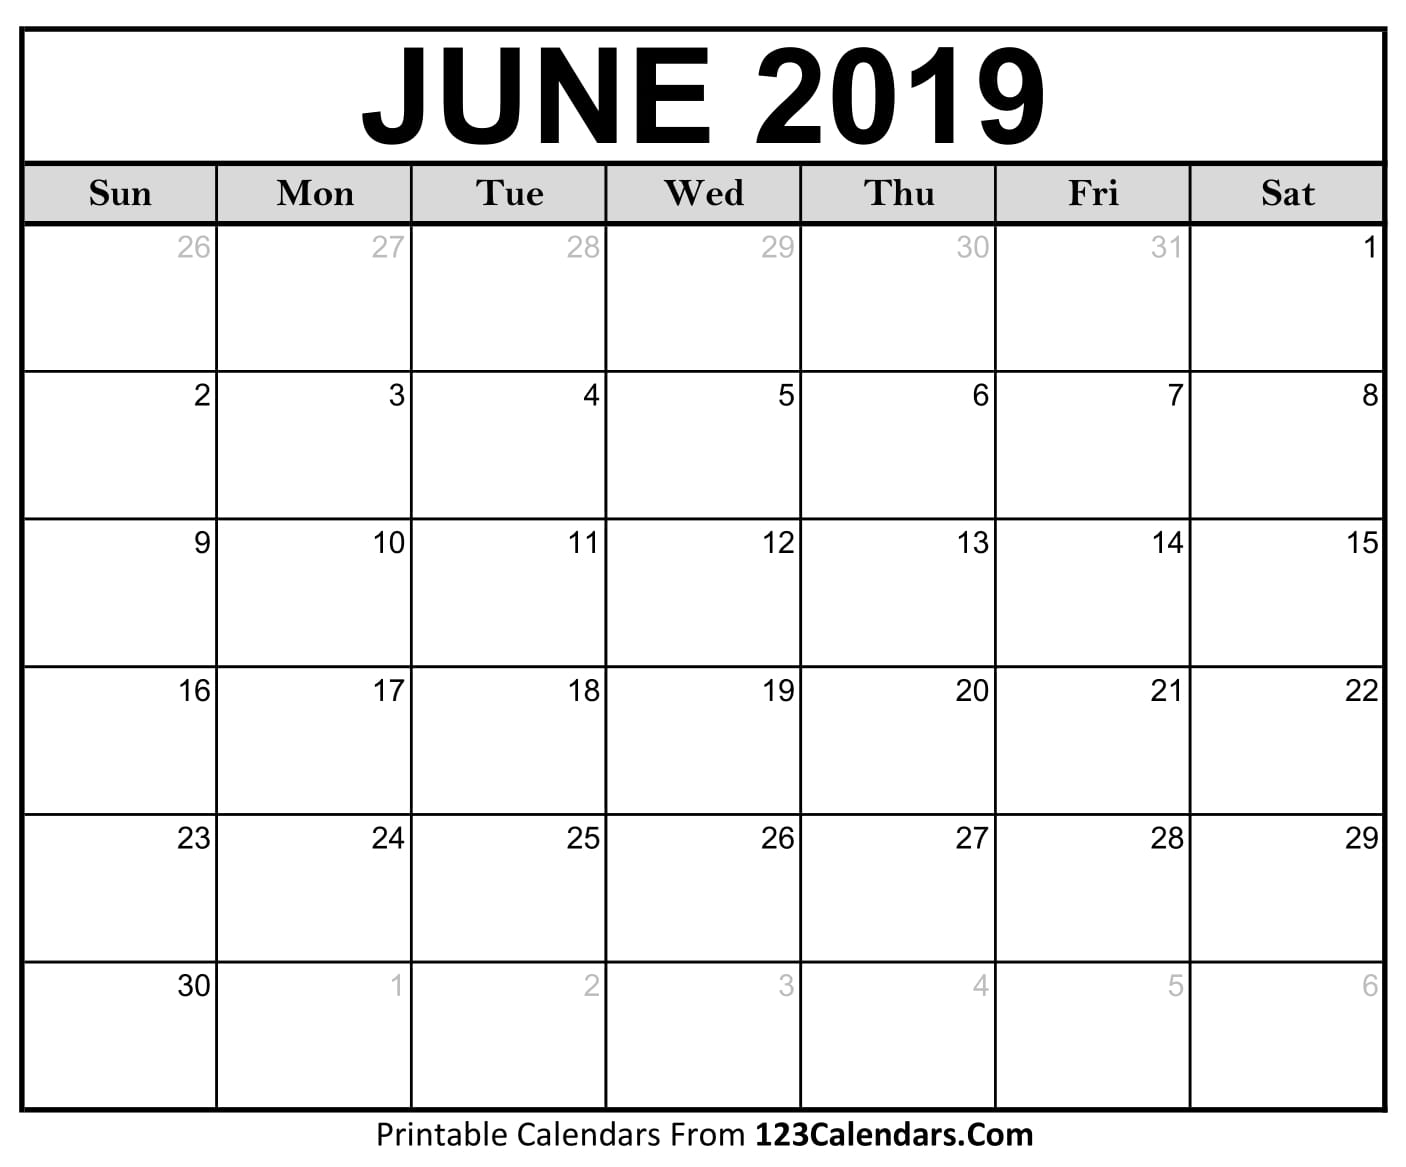 printable-june-2018-calendar-templates-123calendars-com